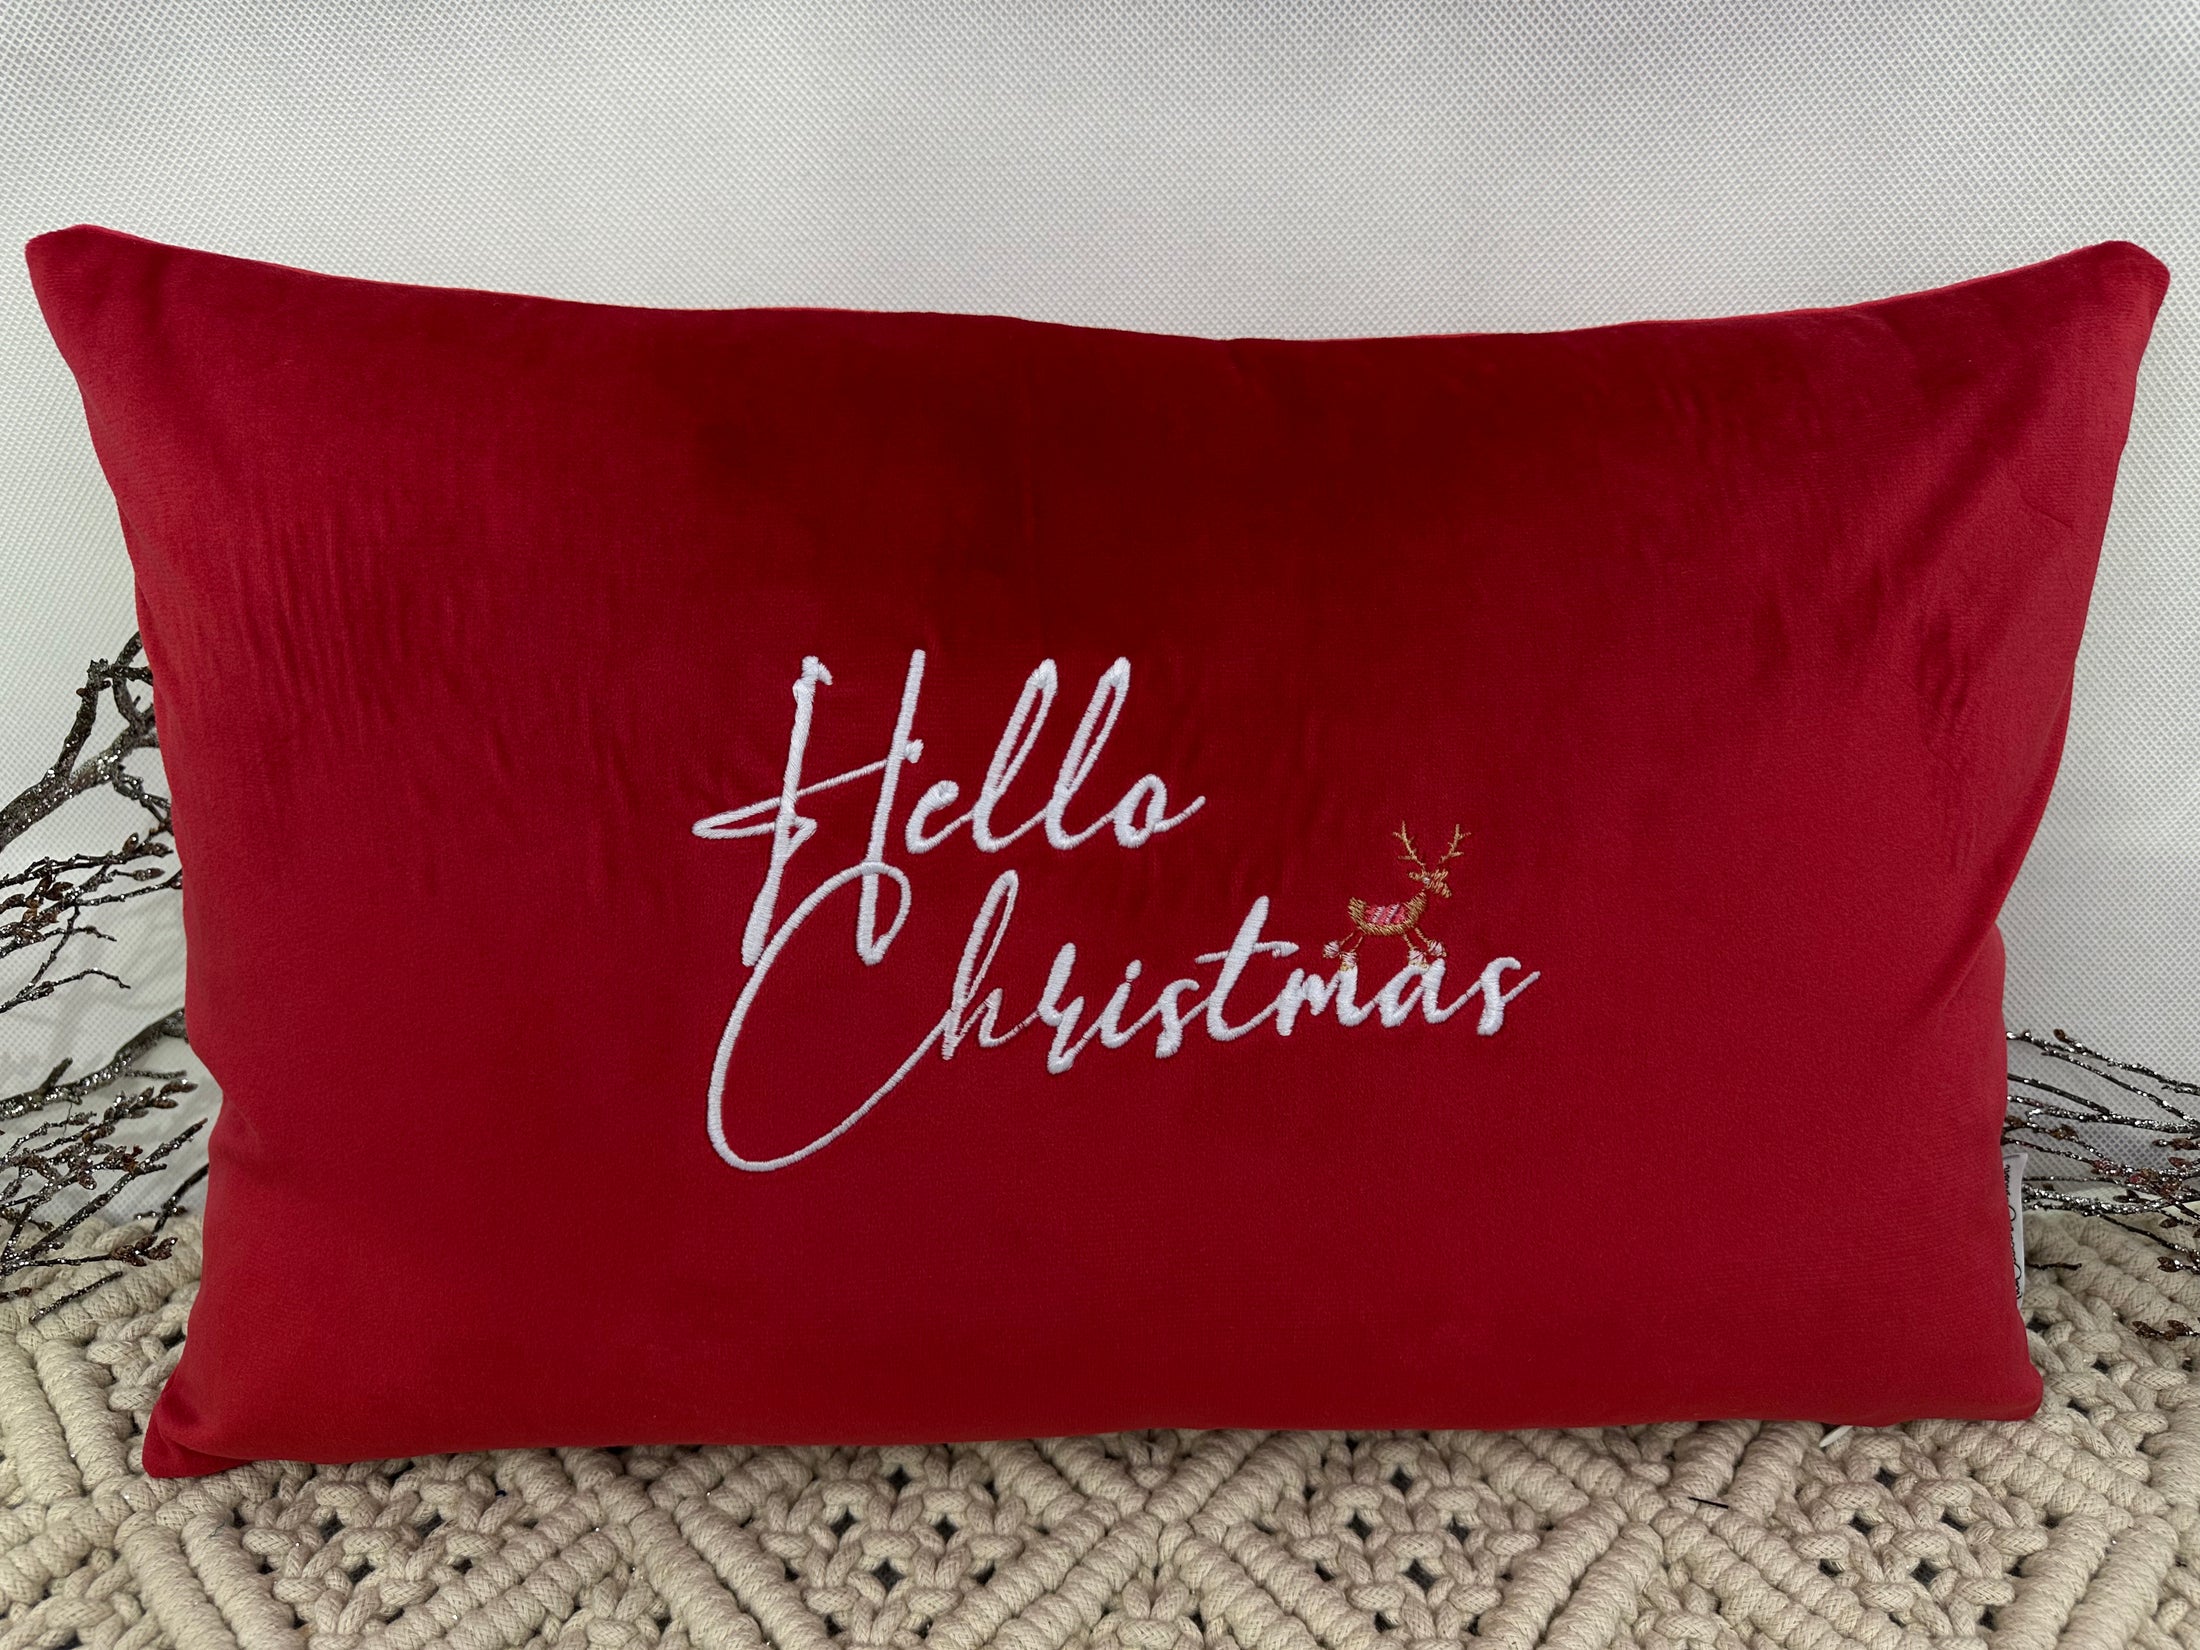 The Luxury Red Velvet Hello Christmas Cushion